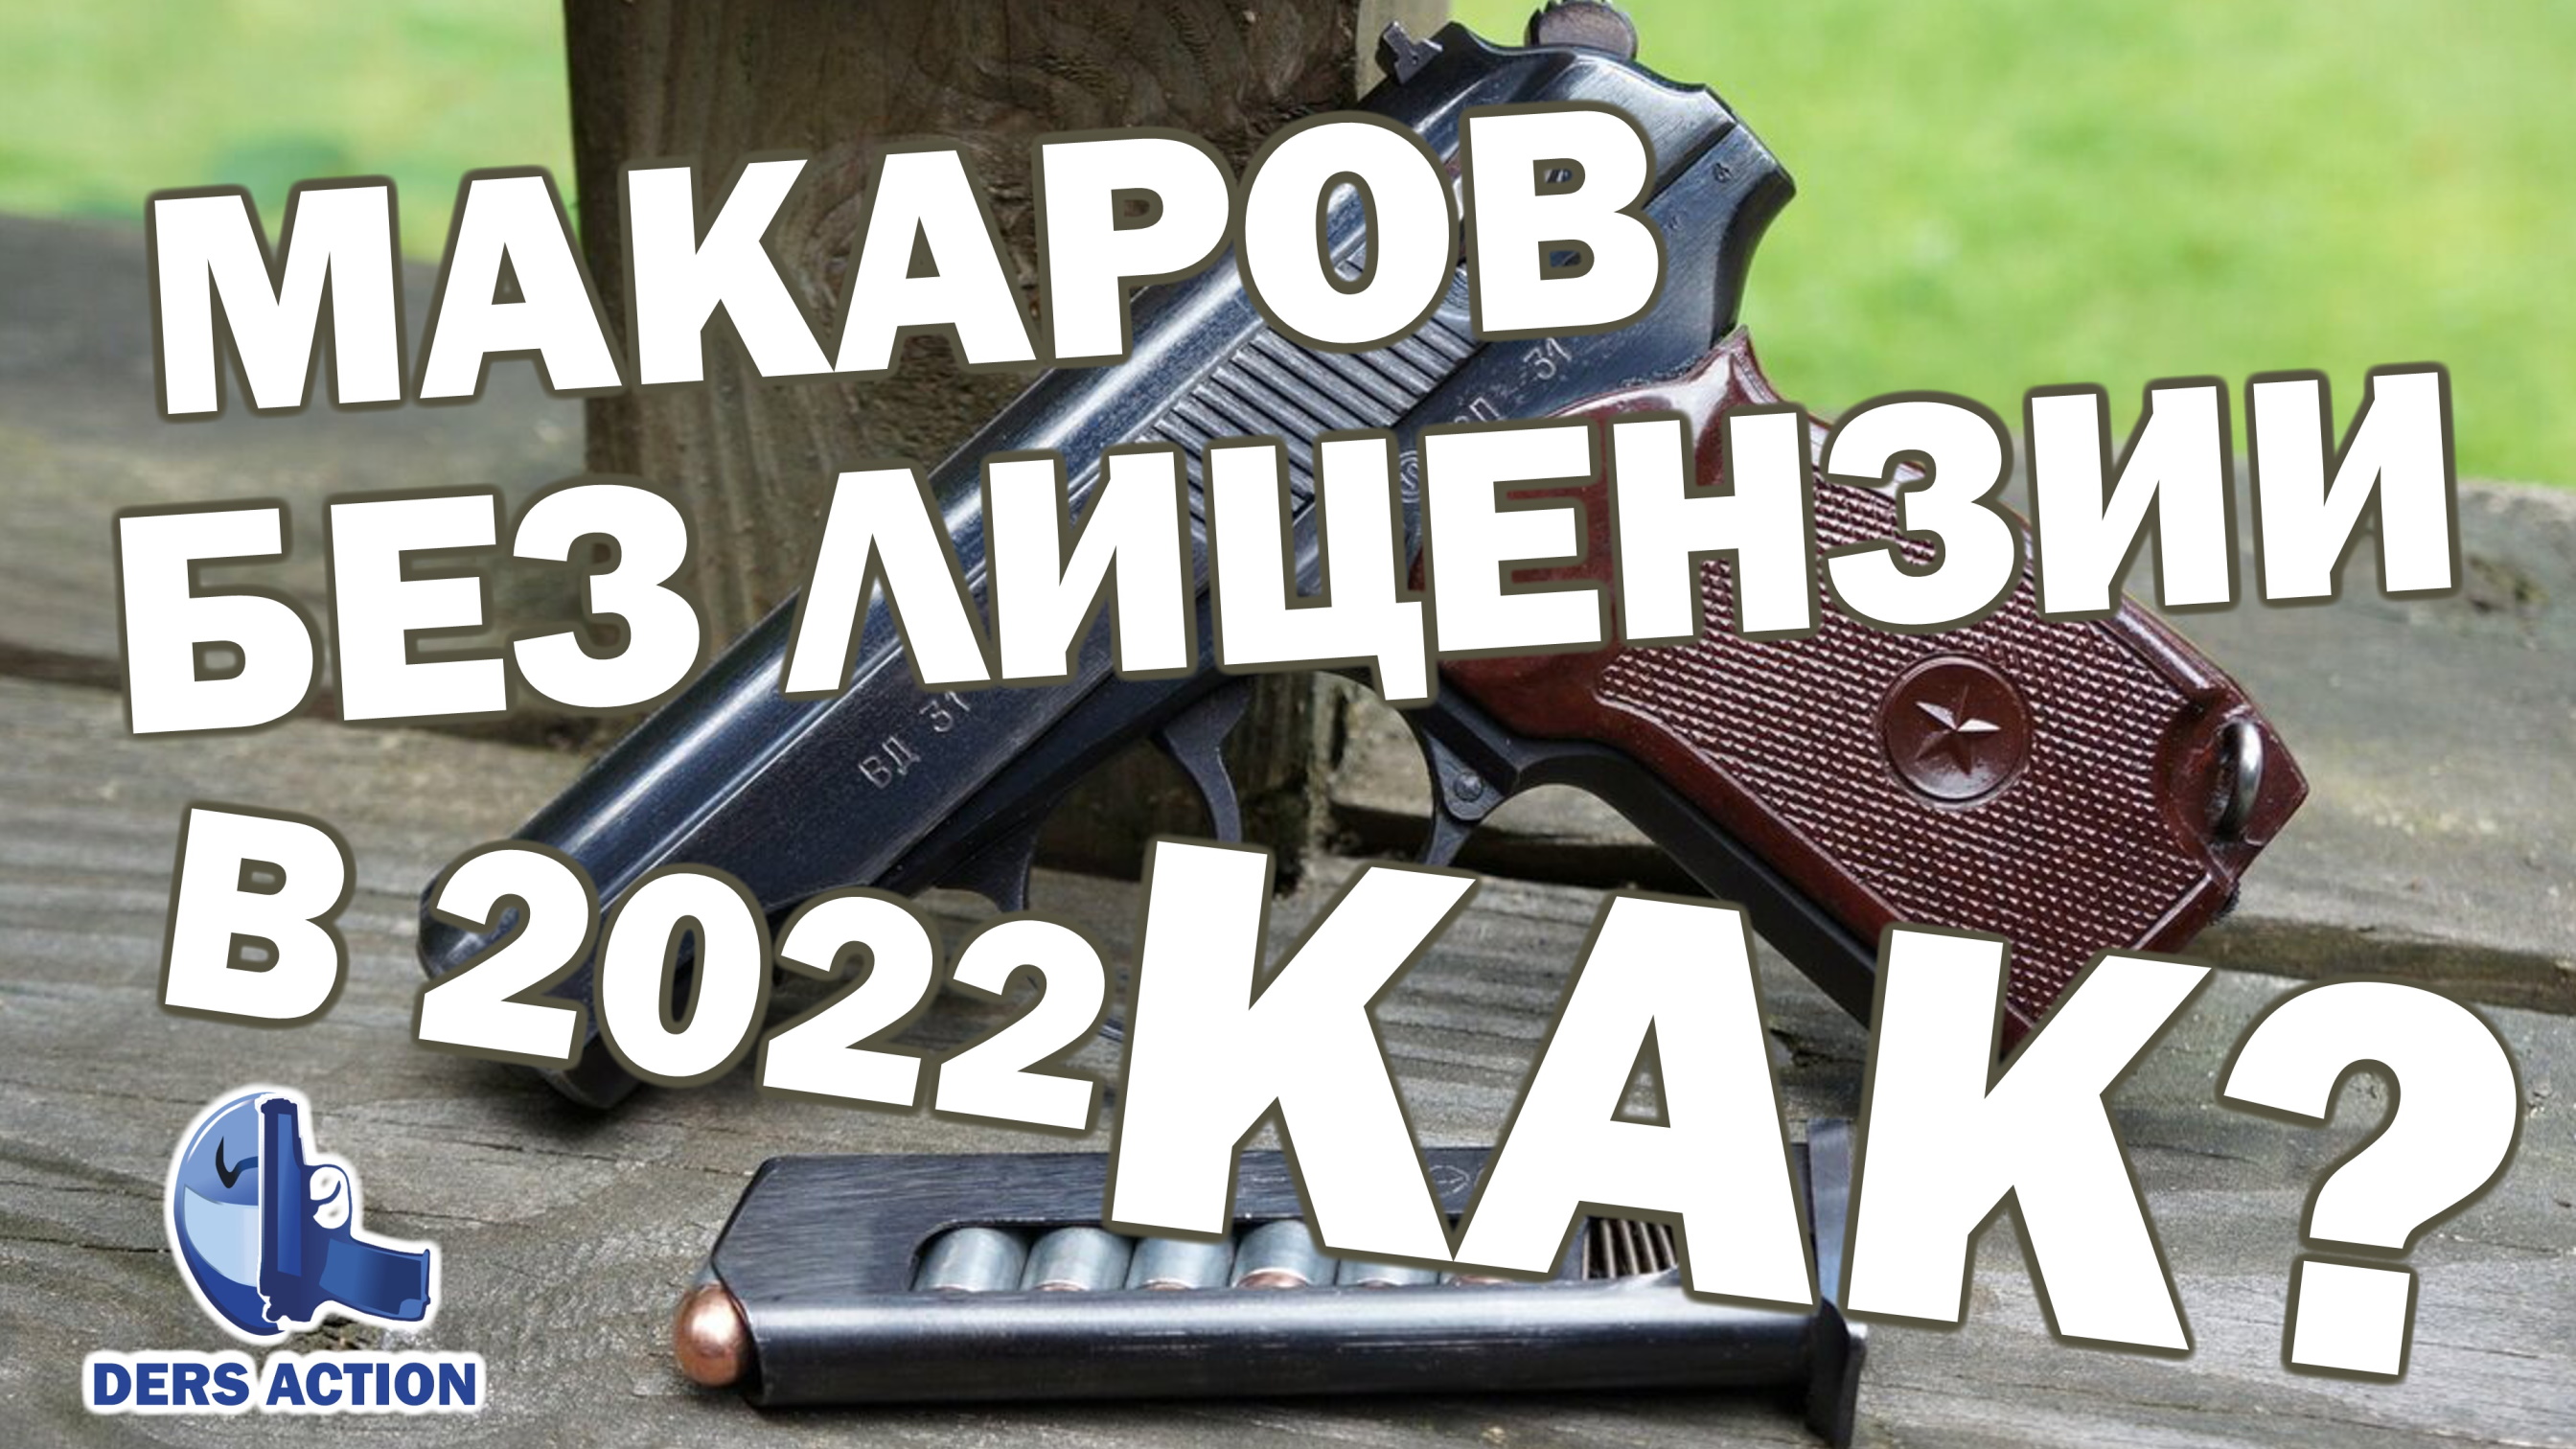 Макаров без лицензии! MP654K #макаров #мр654 #макарыч #пистолет #пм